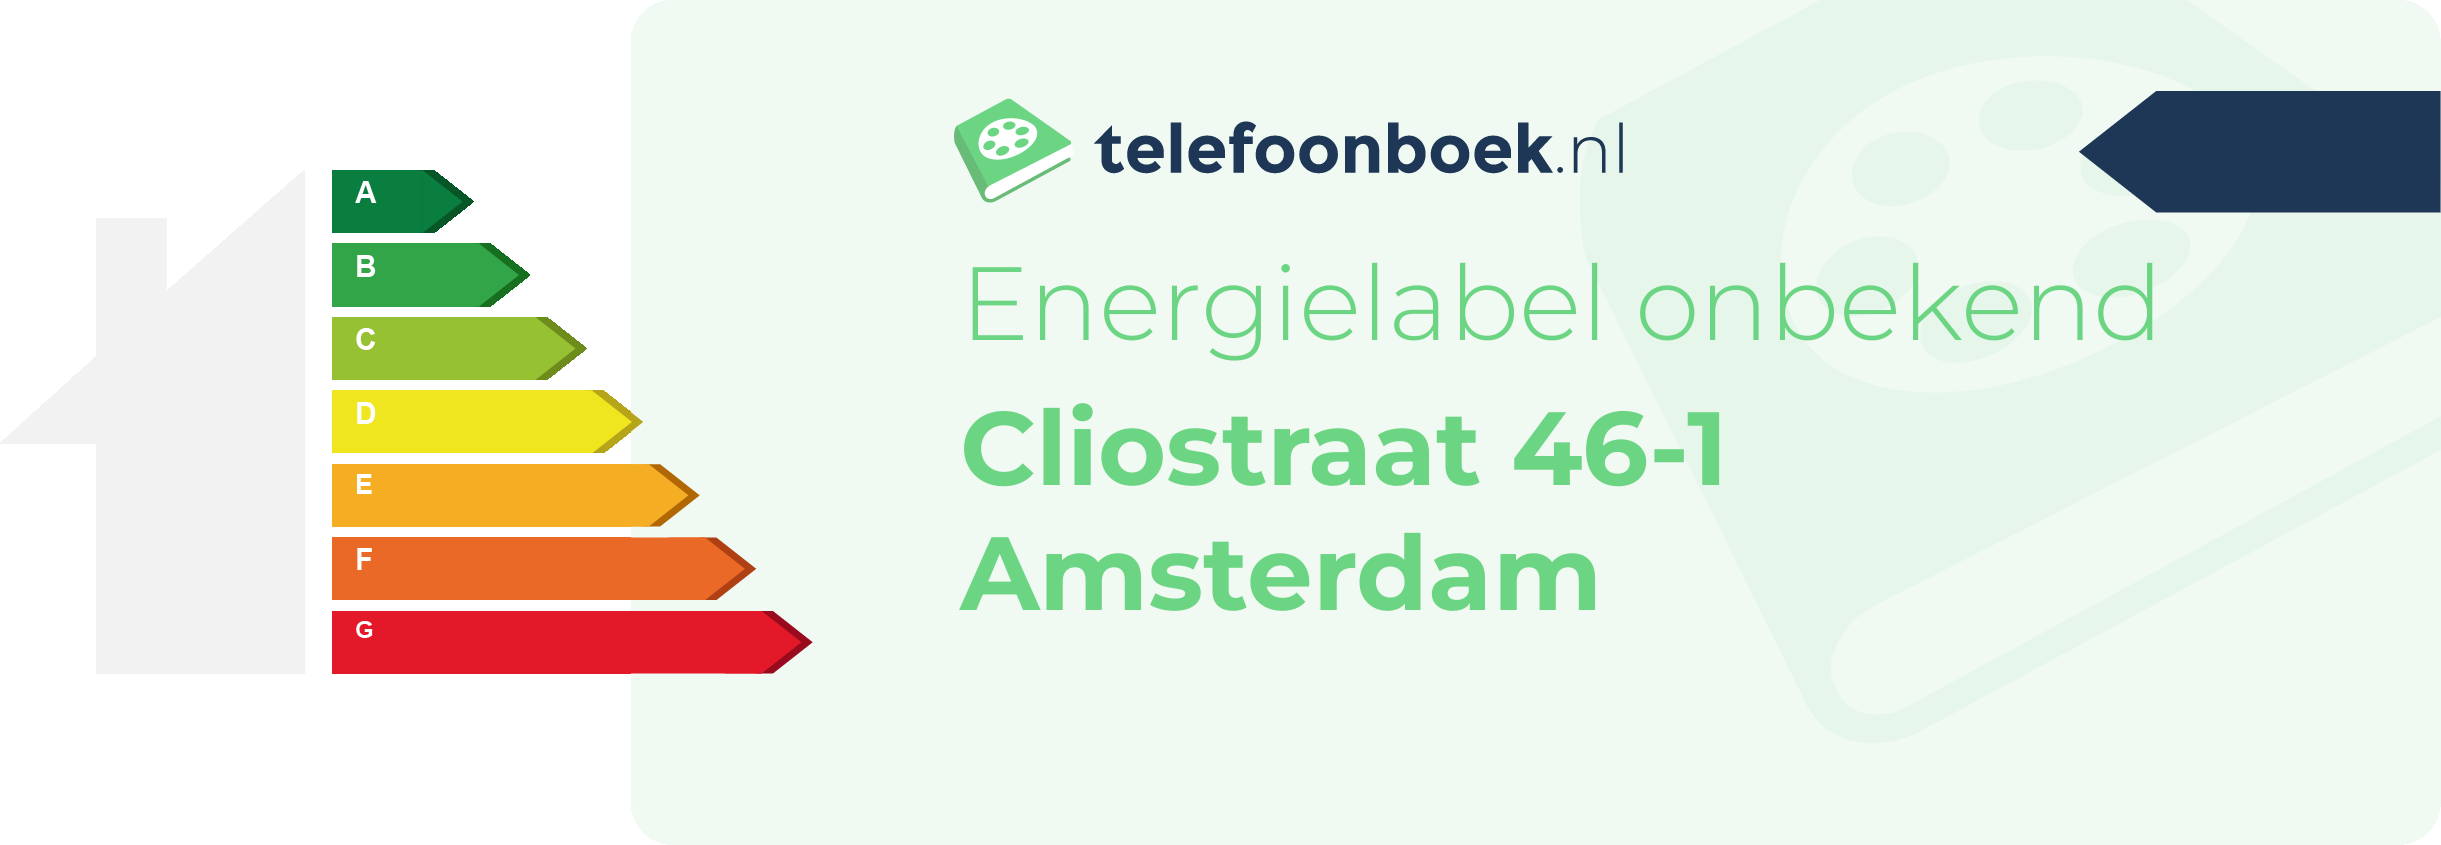 Energielabel Cliostraat 46-1 Amsterdam